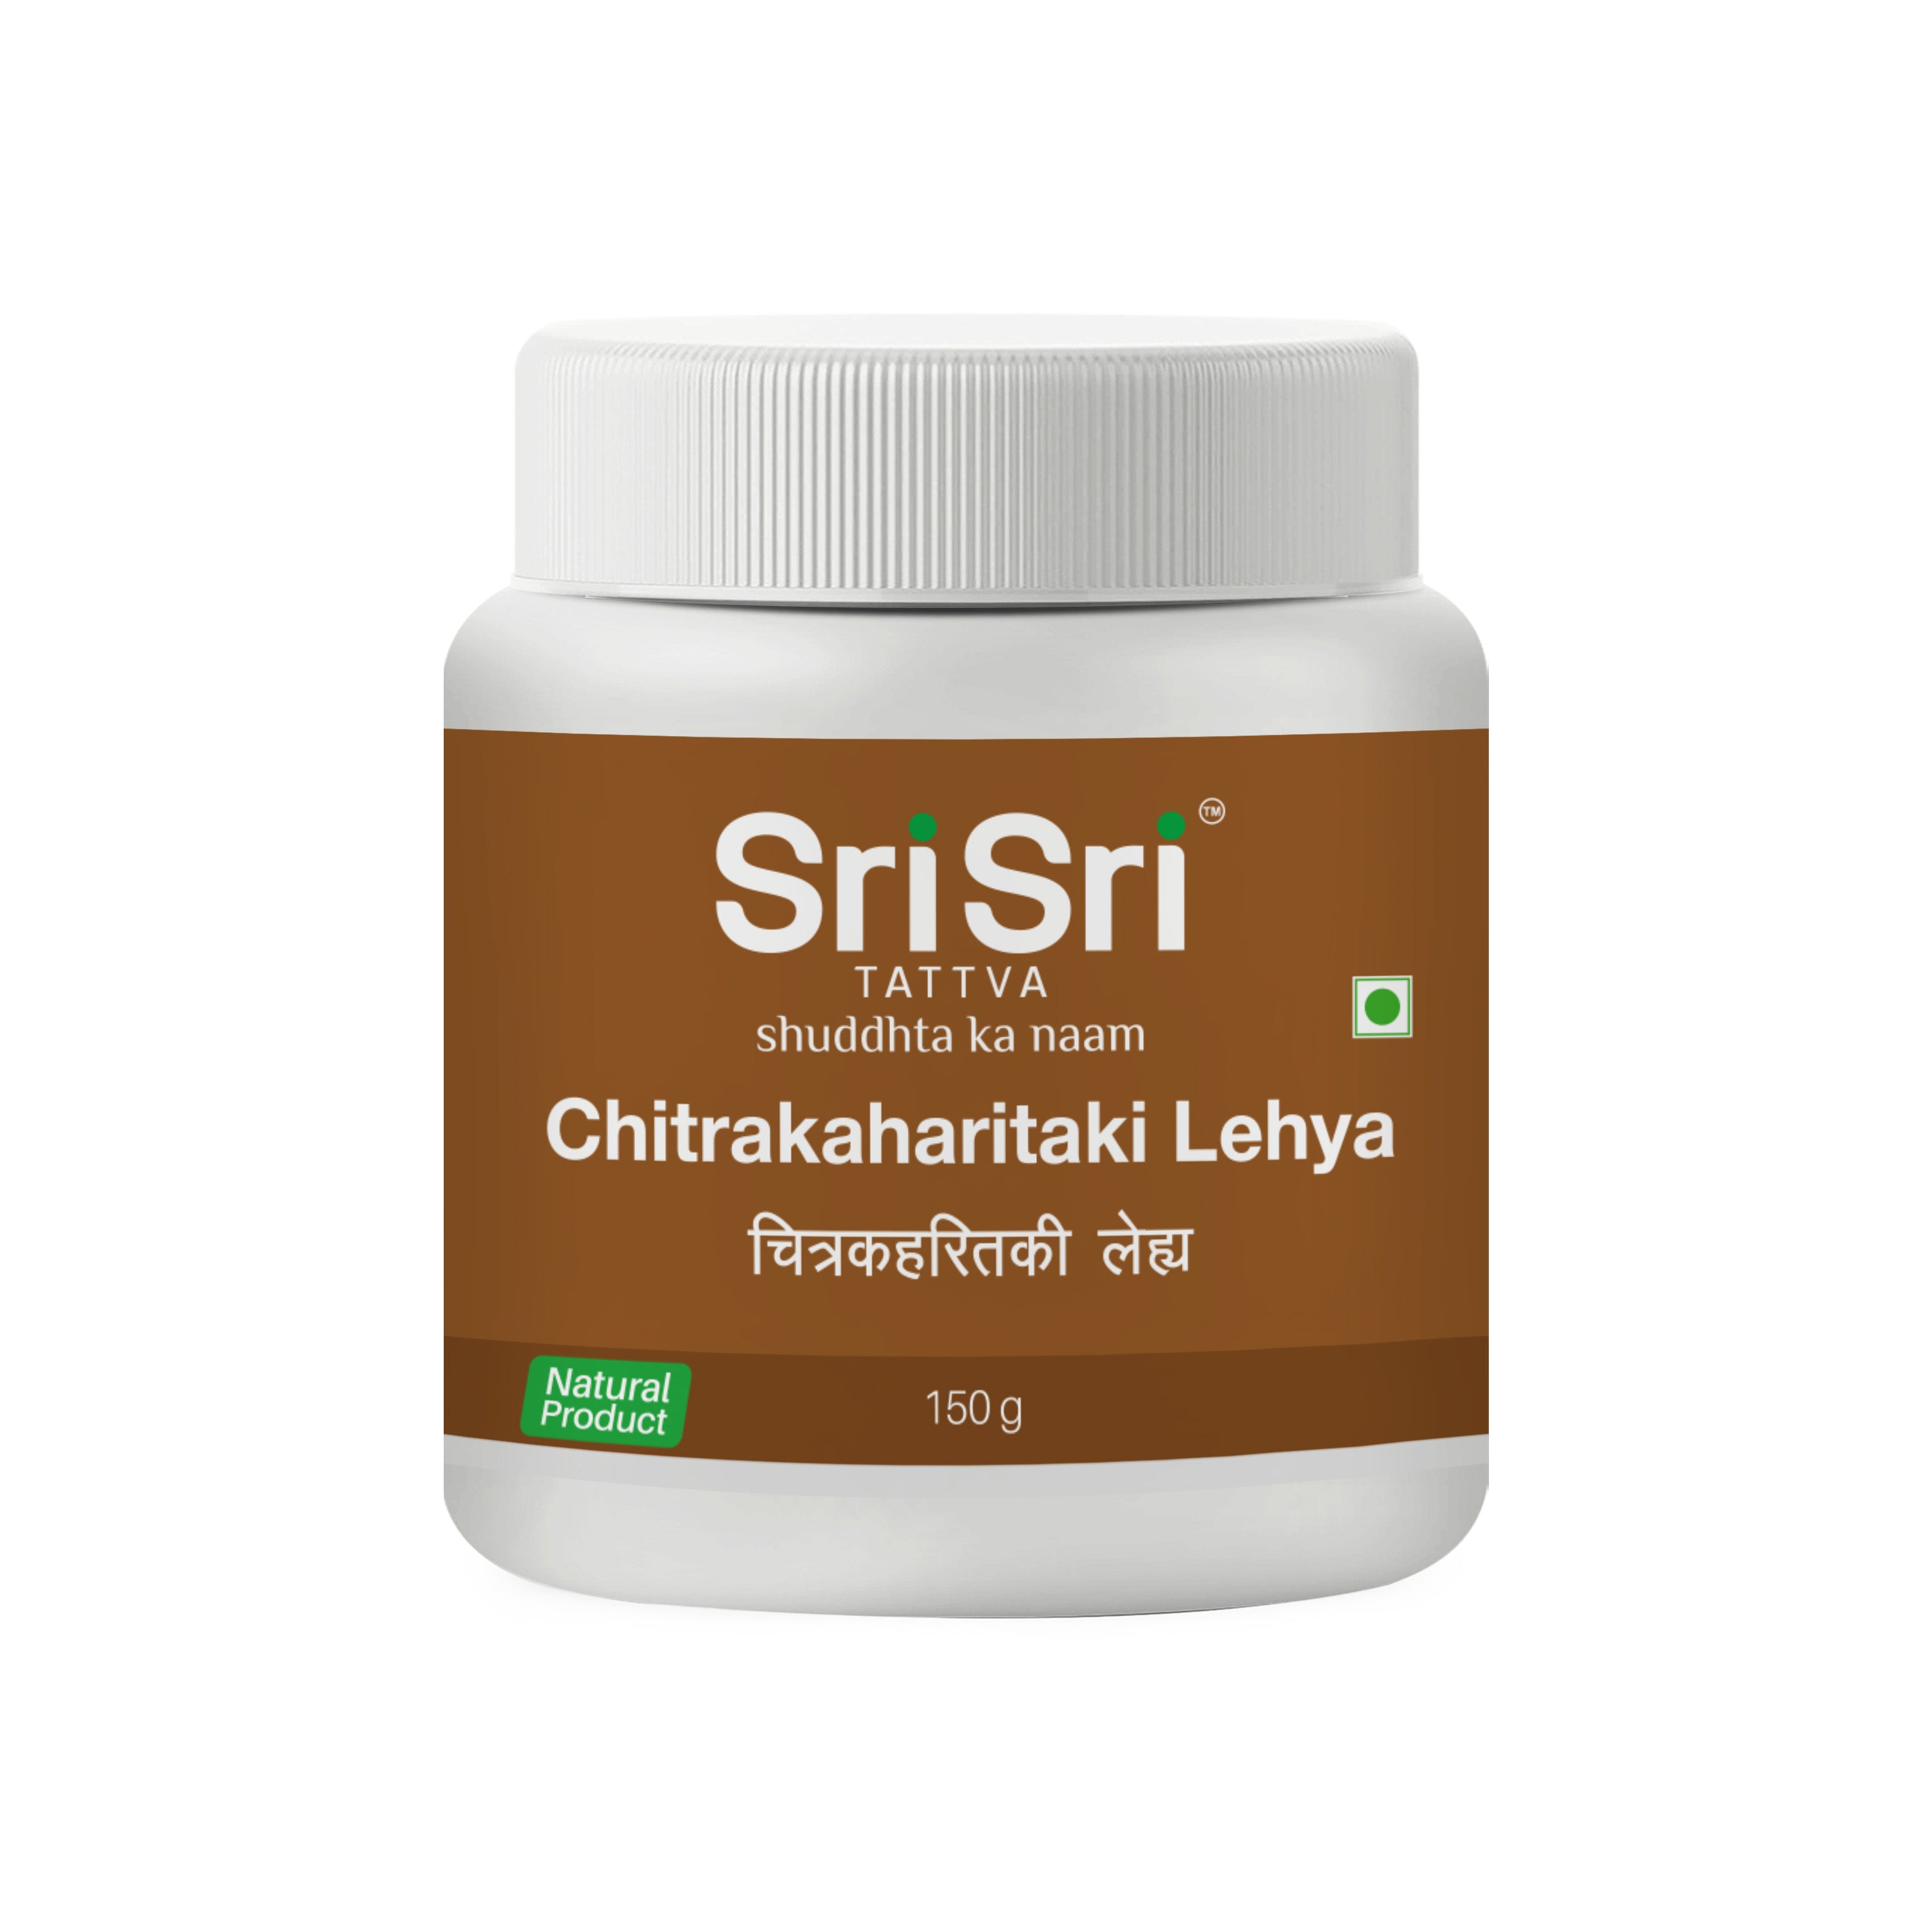 Chitrakaharitaki Lehya - Respiratory Diseases, 150 g